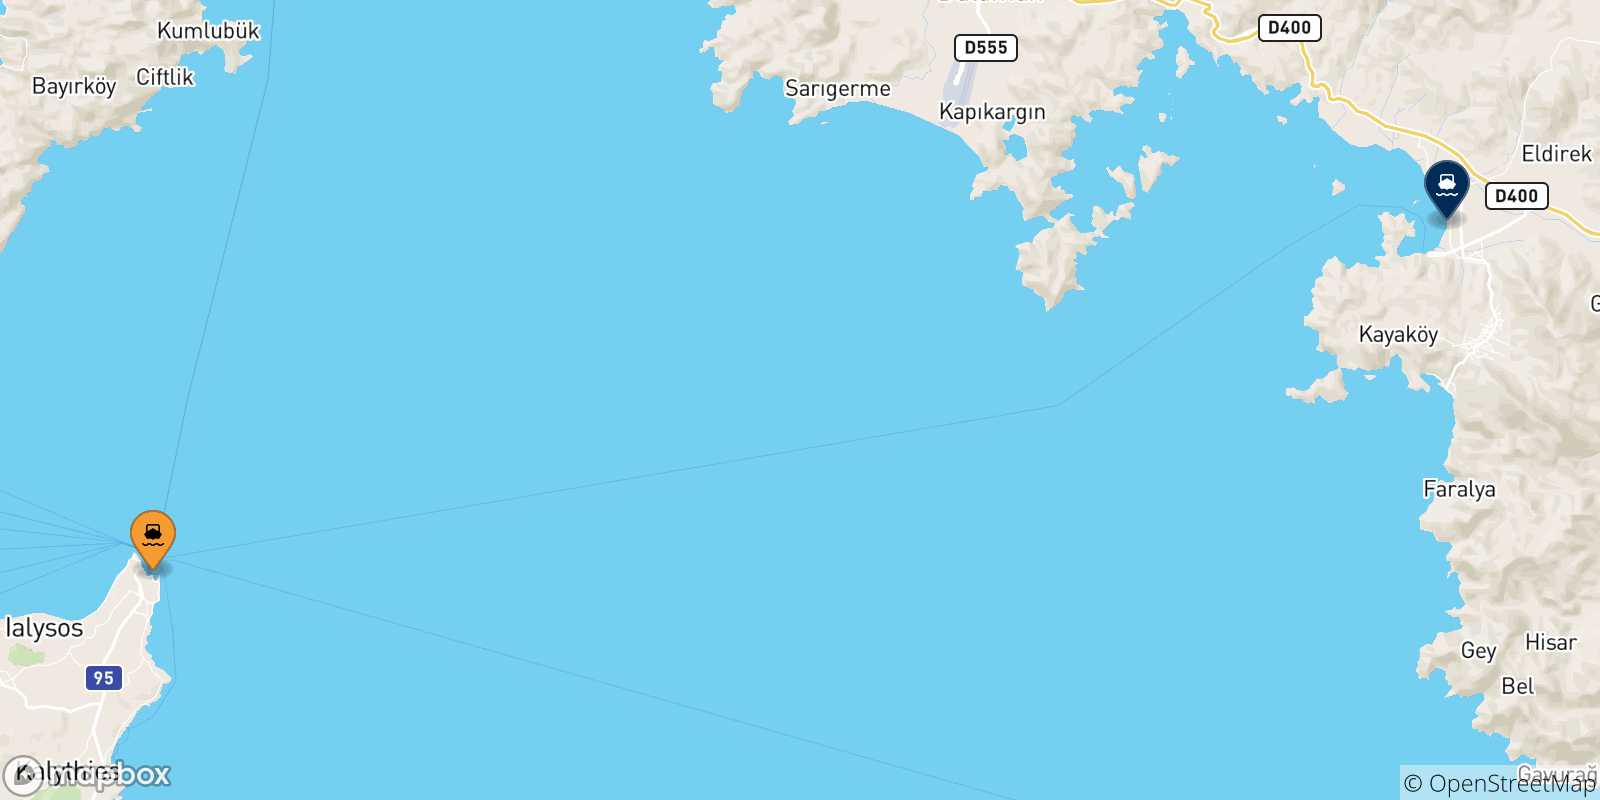 Mappa delle possibili rotte tra le Isole Dodecaneso e Fethiye